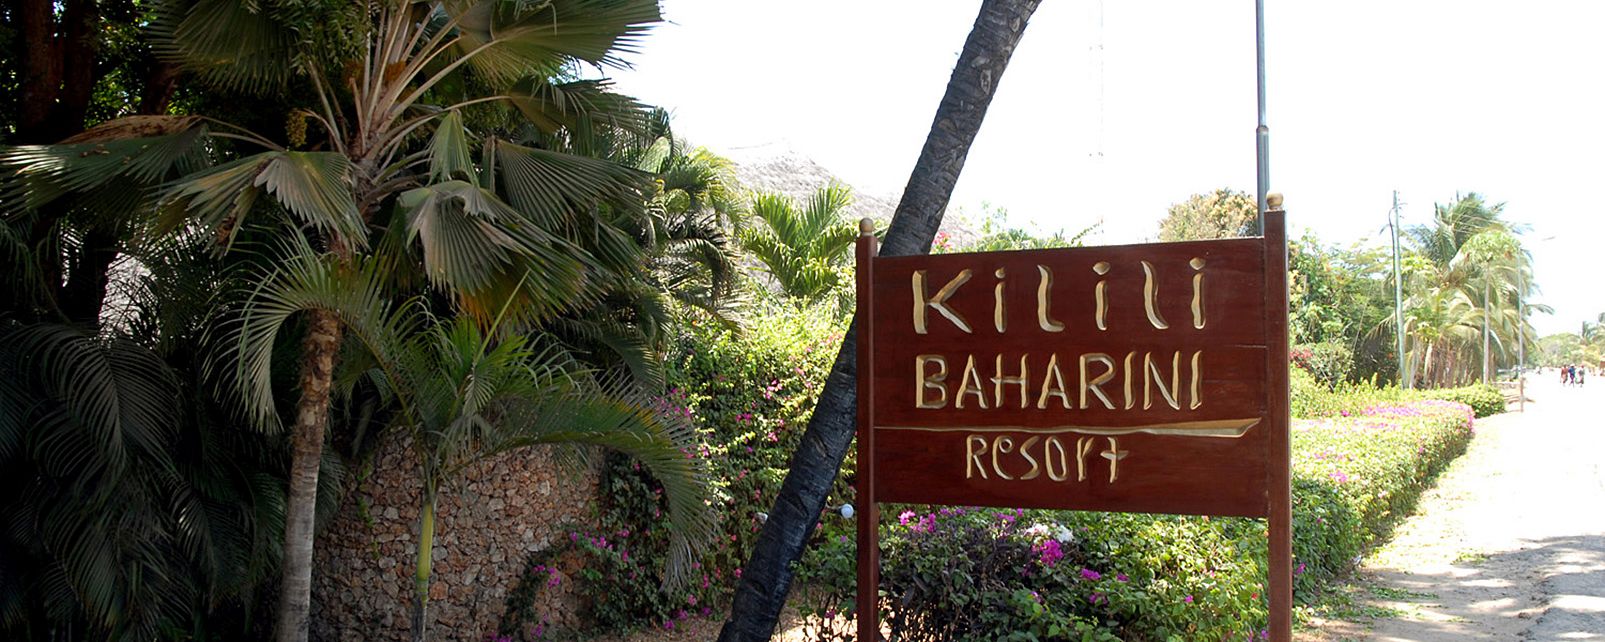 Hotel Kilili Baharini